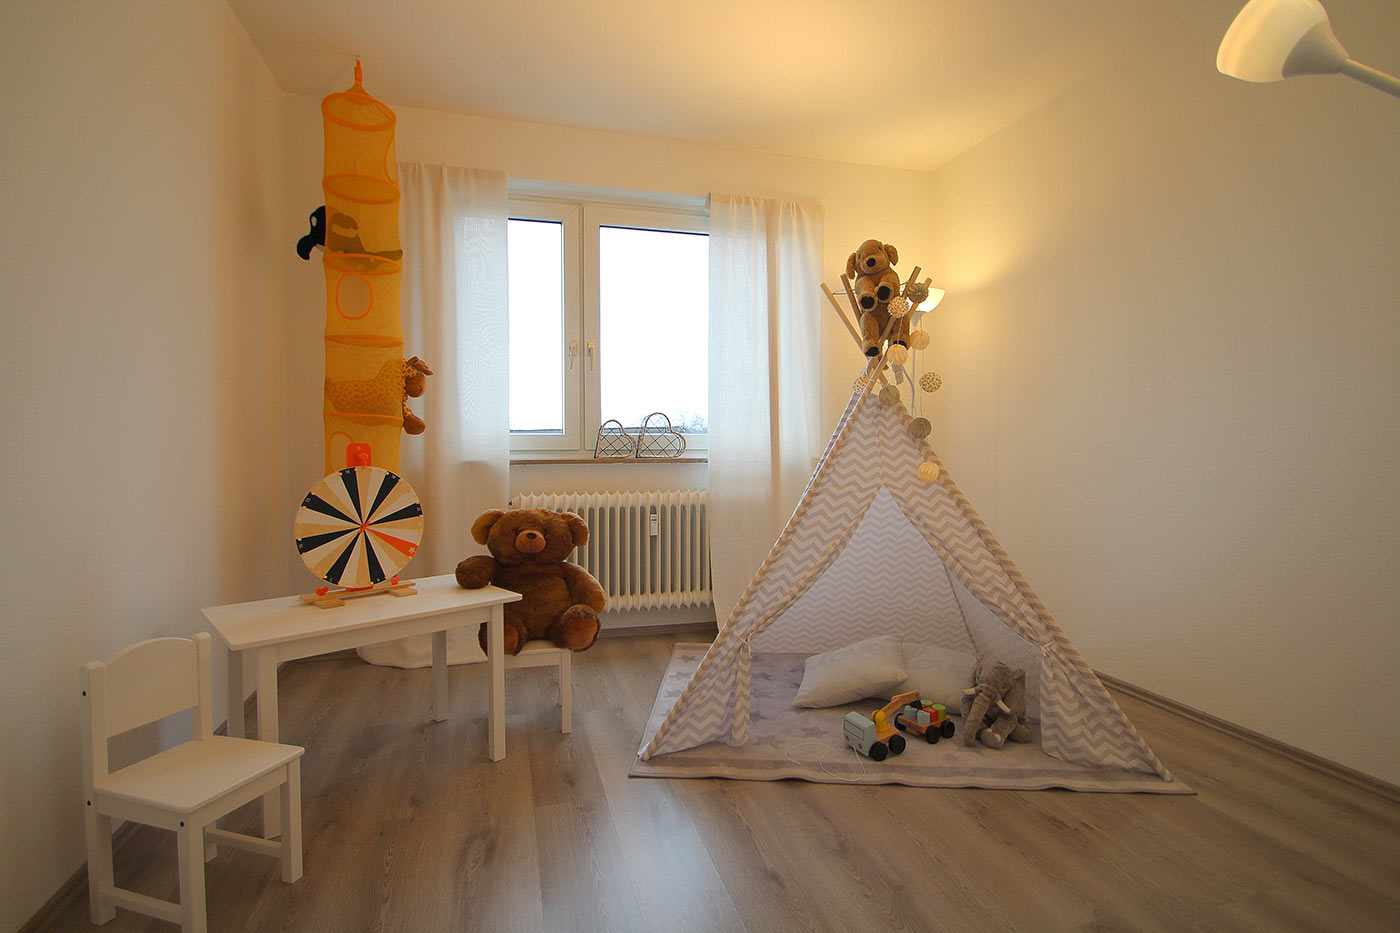 Kinderzimmer nach dem Homestaging durch Nicole Biernath von Blickfang Homestaging in Soest